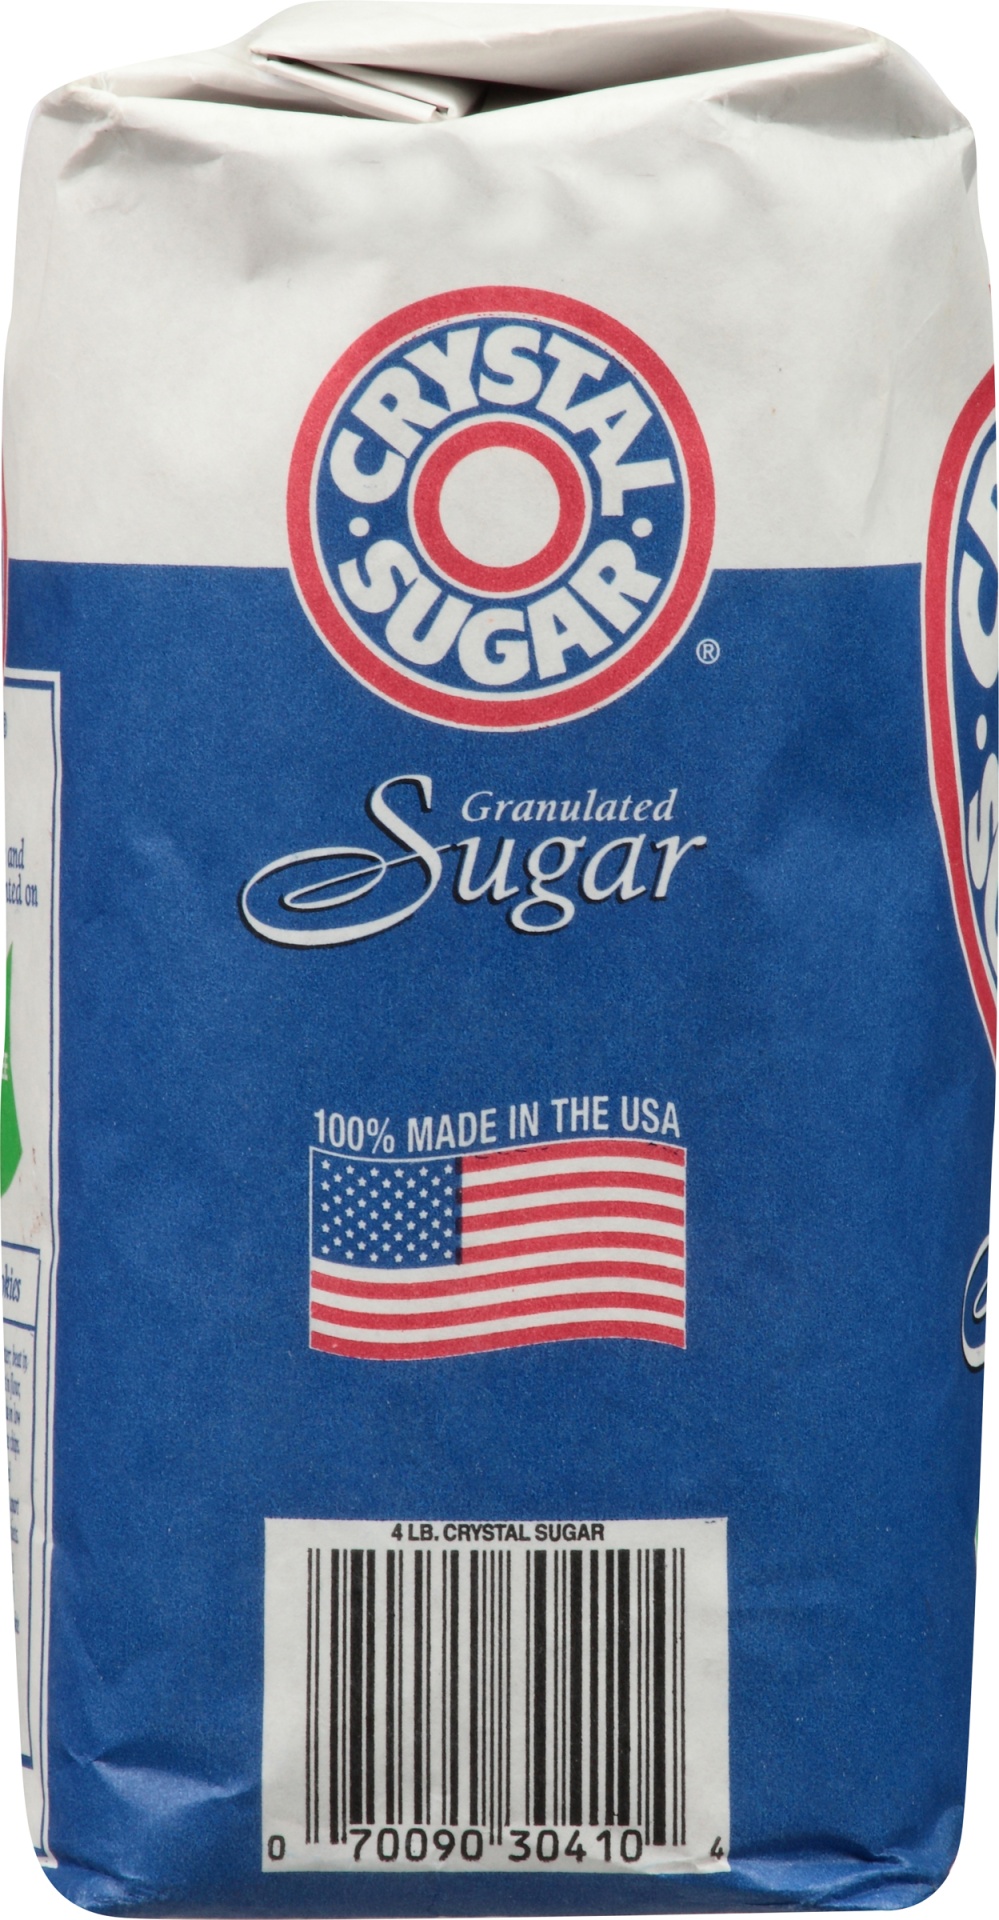 slide 5 of 8, Crystal Sugar Bag, 4 lb